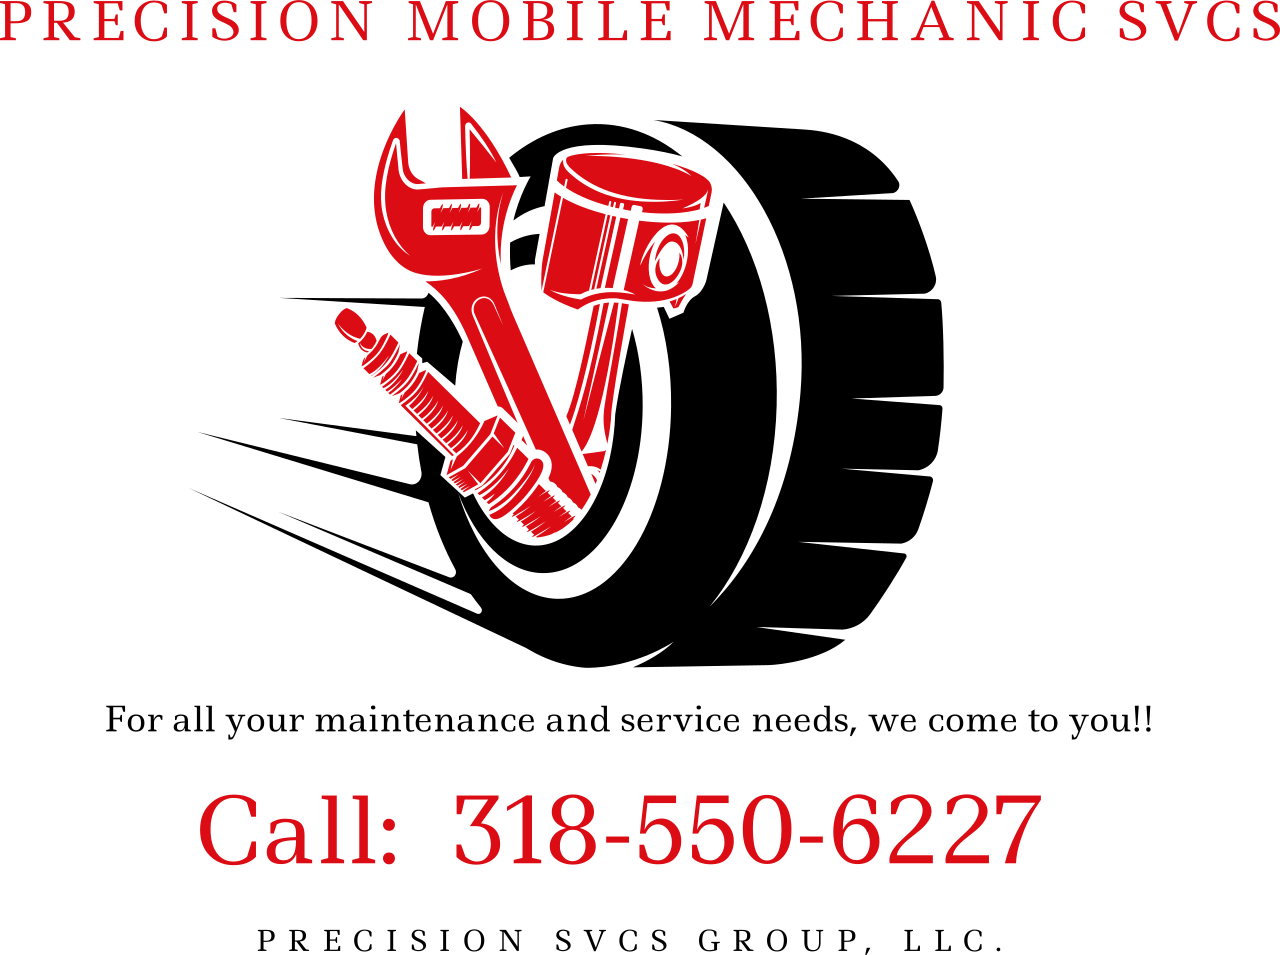 PRECISION MOBILE MECHANIC SVCS's logo